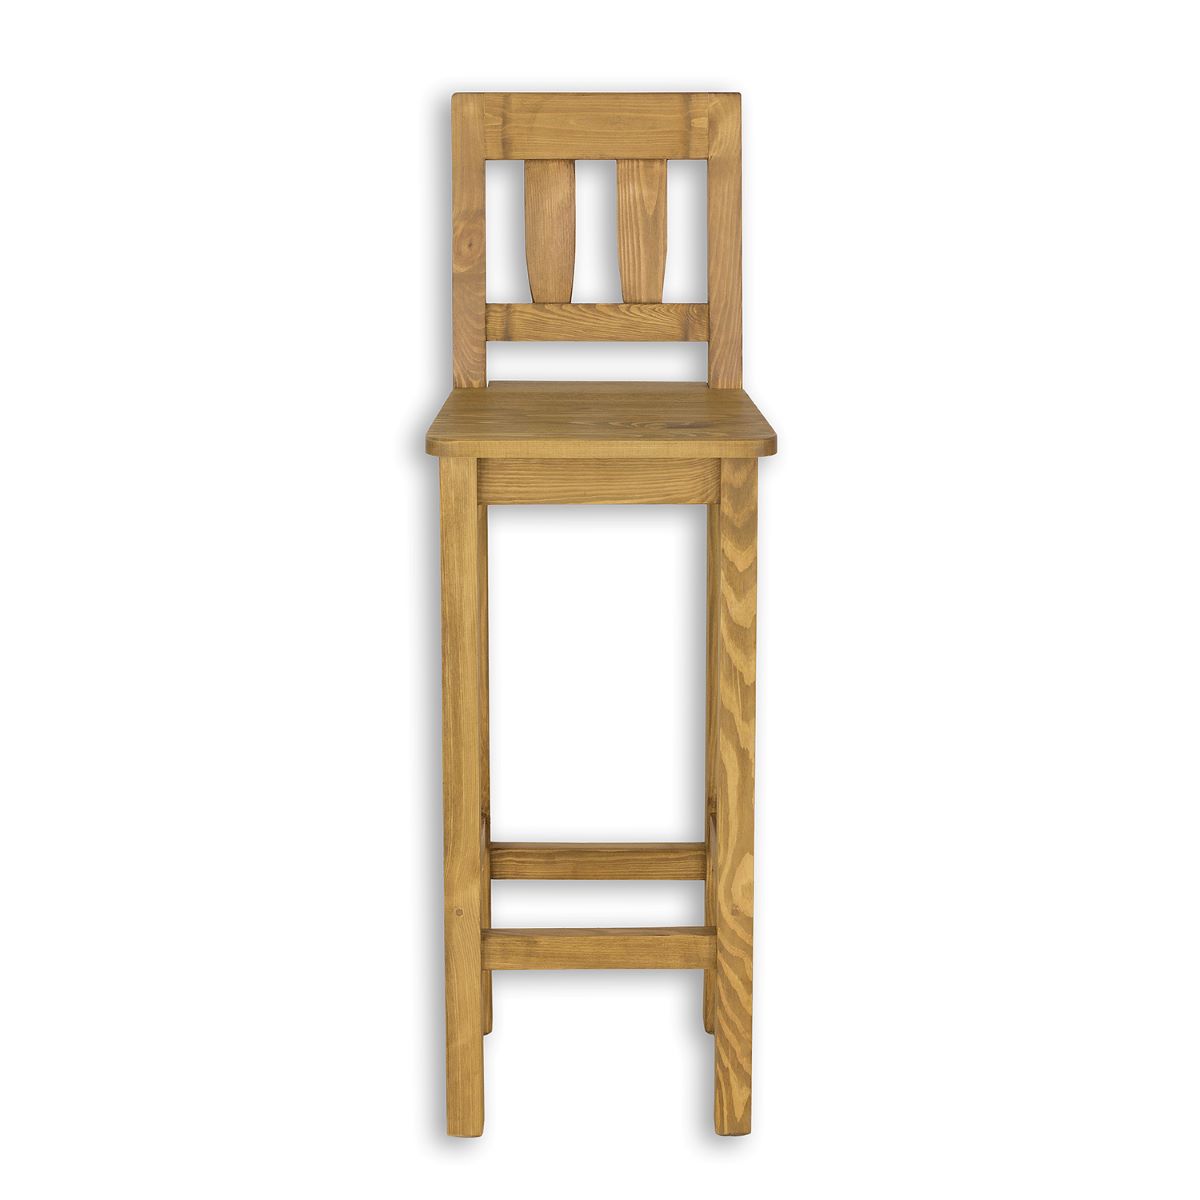 E-shop Rustik barová stolička KT708, jasný vosk